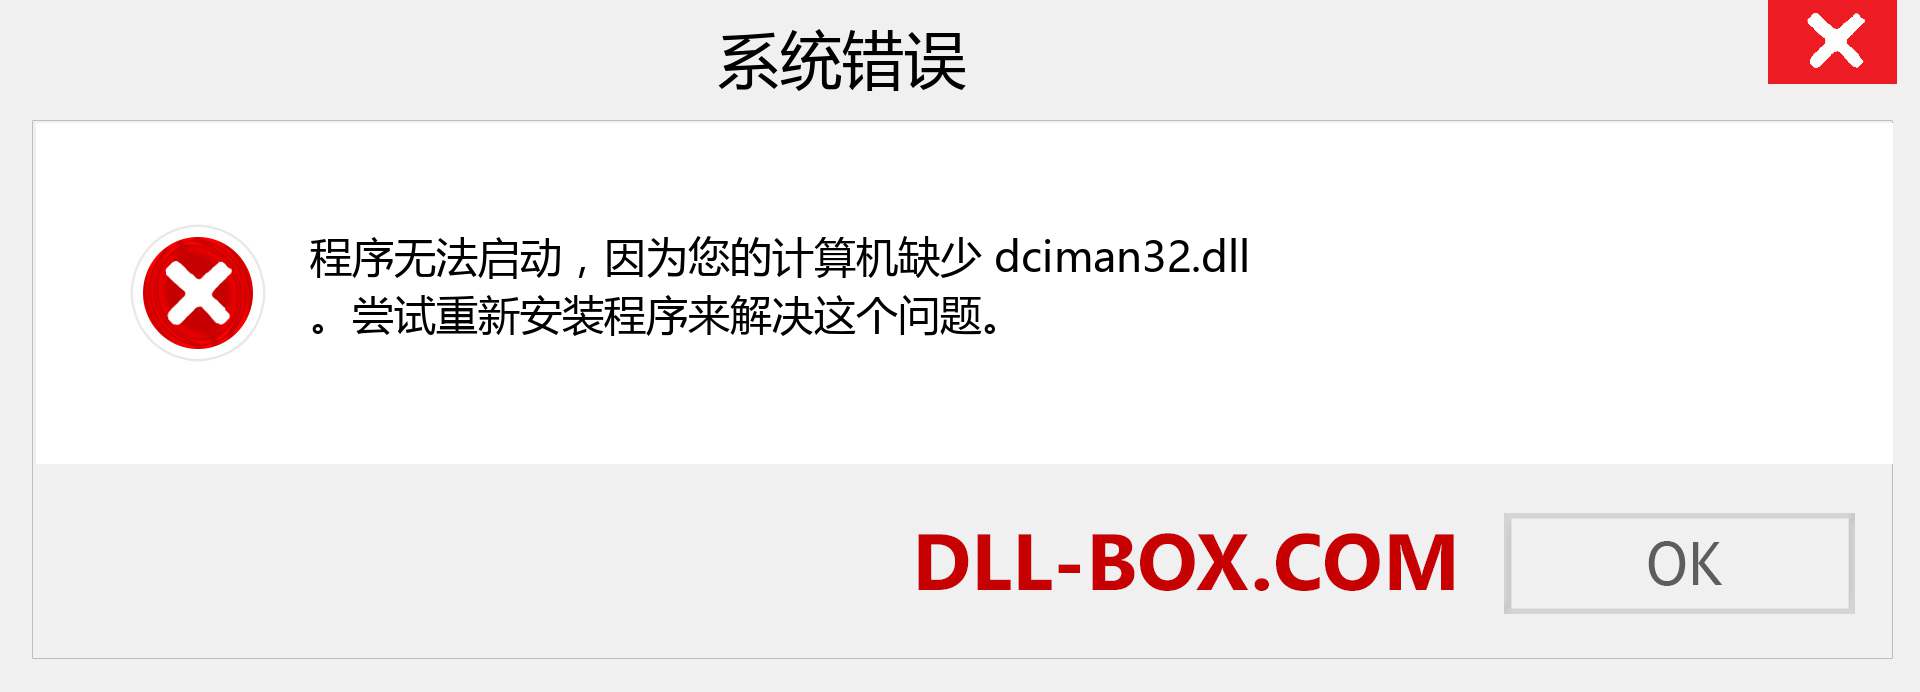 dciman32.dll 文件丢失？。 适用于 Windows 7、8、10 的下载 - 修复 Windows、照片、图像上的 dciman32 dll 丢失错误